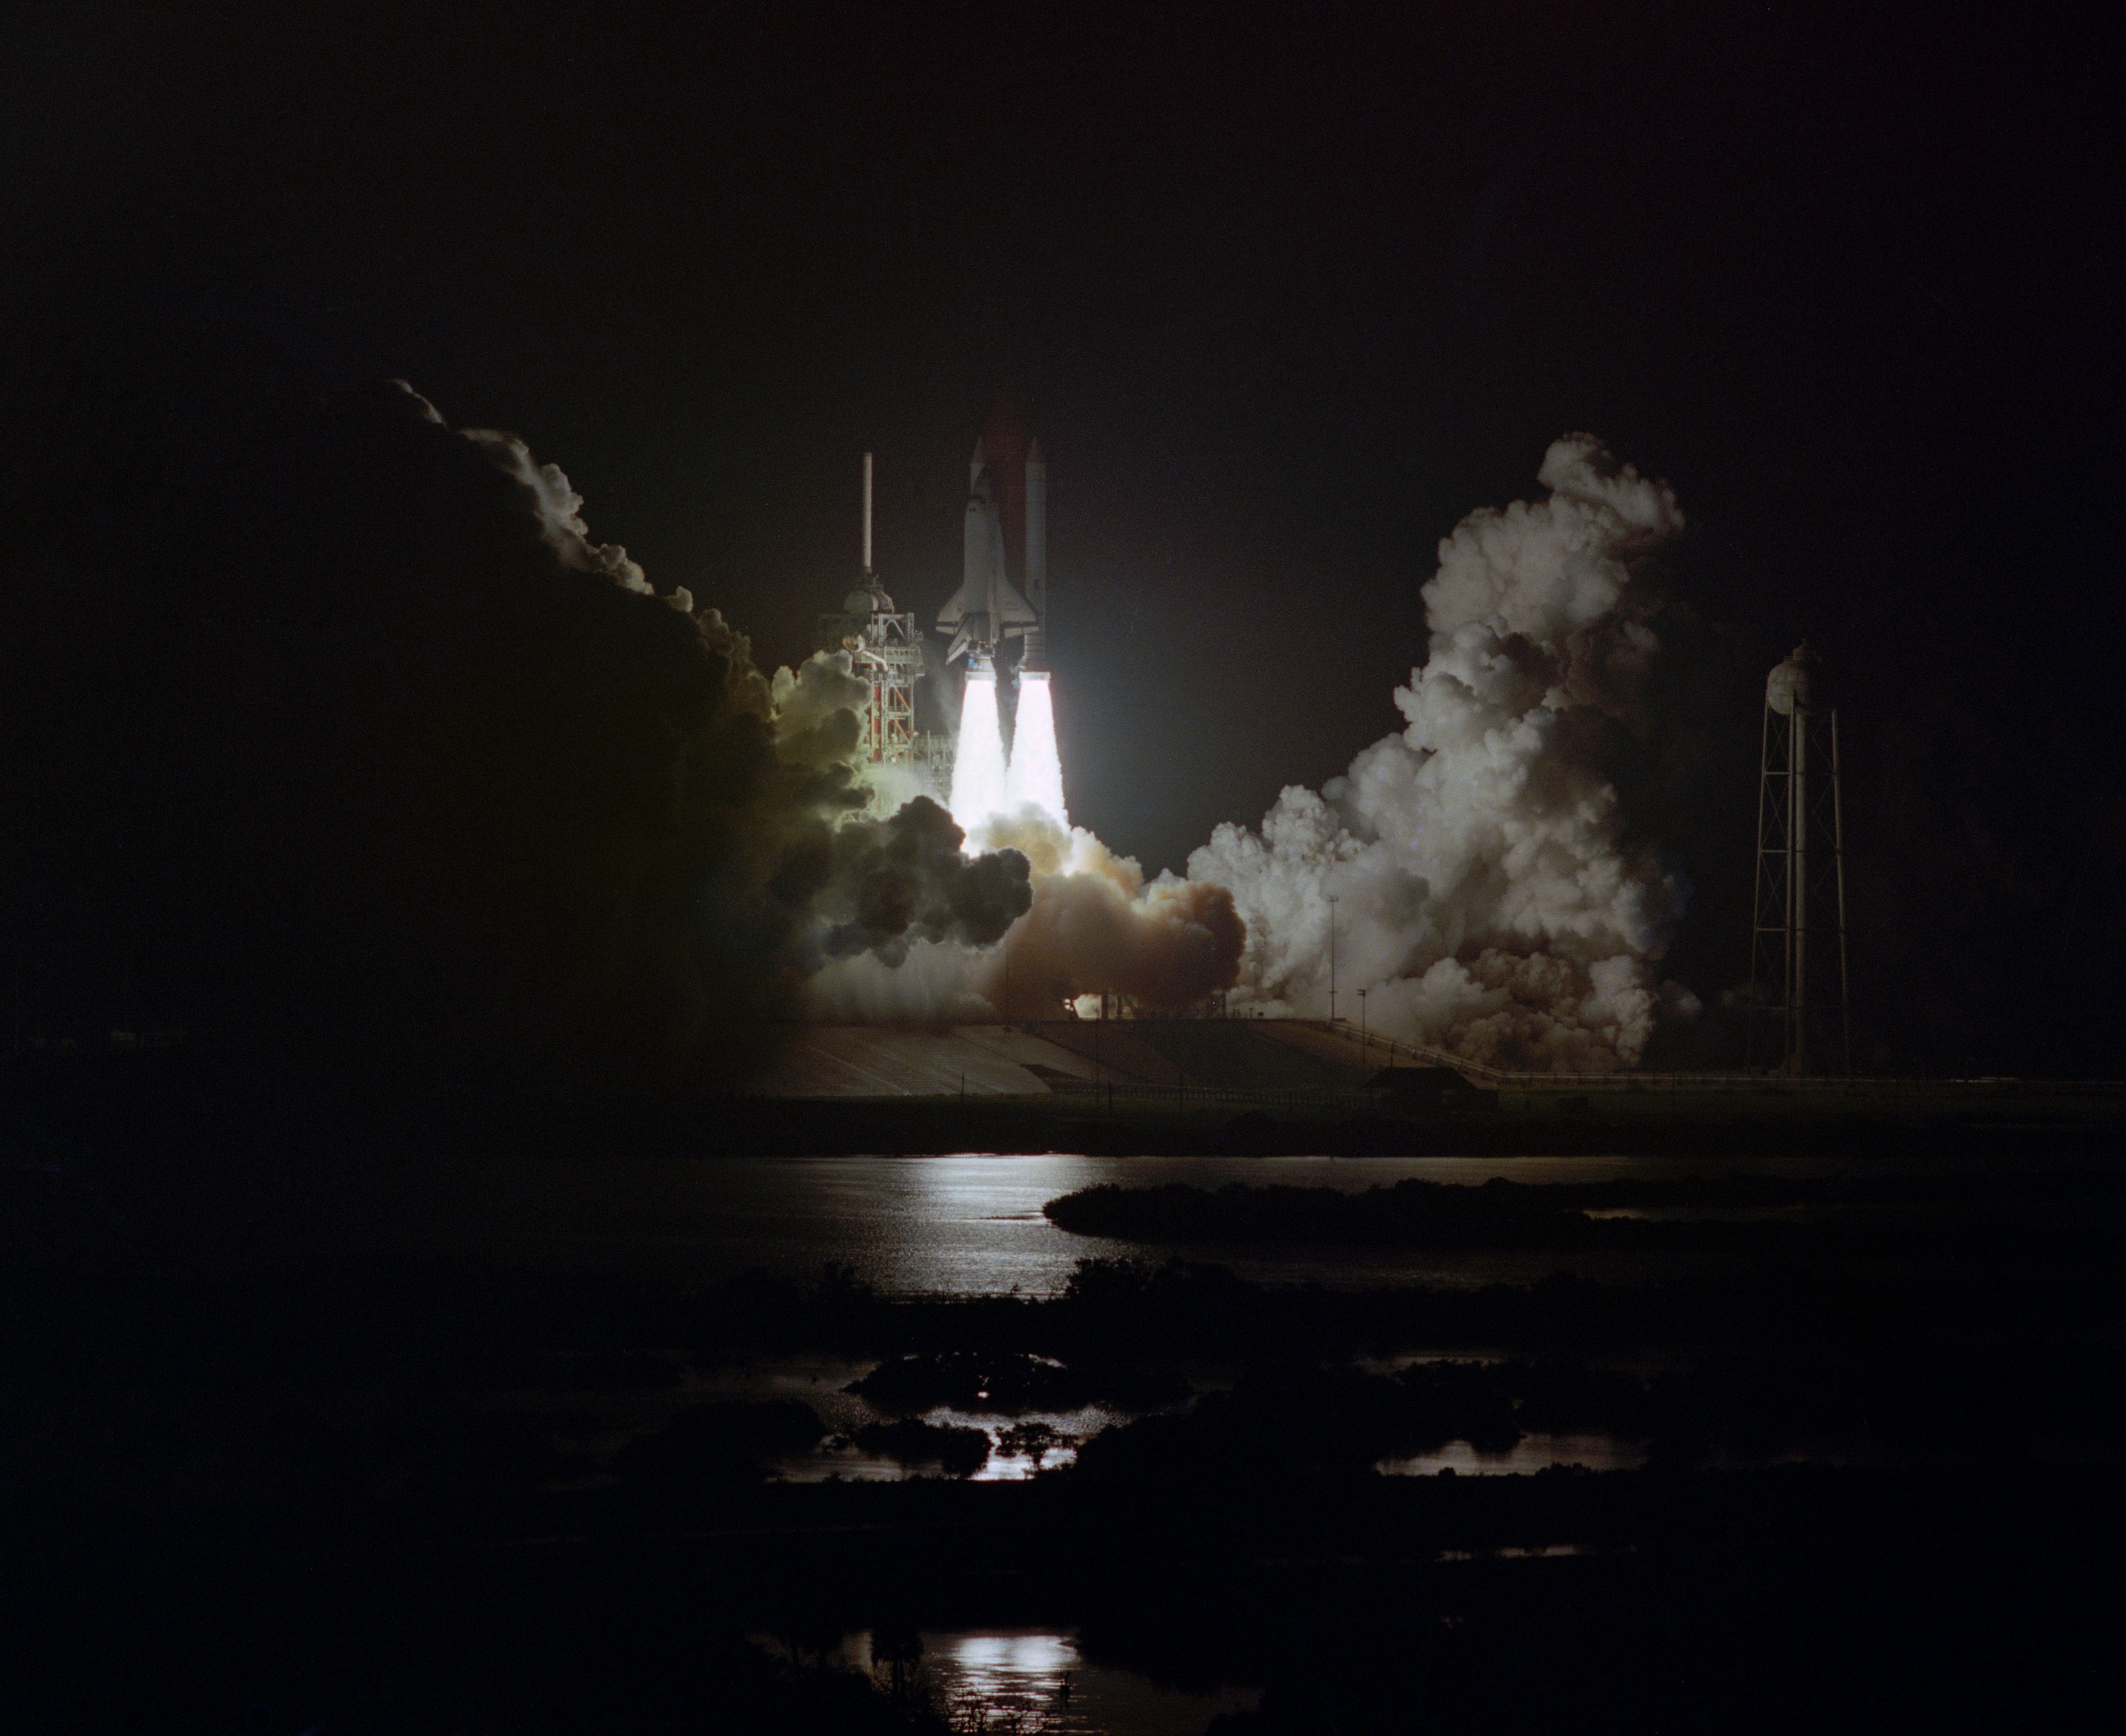 NASA image of launch of STS 8 mission photo credit NASA